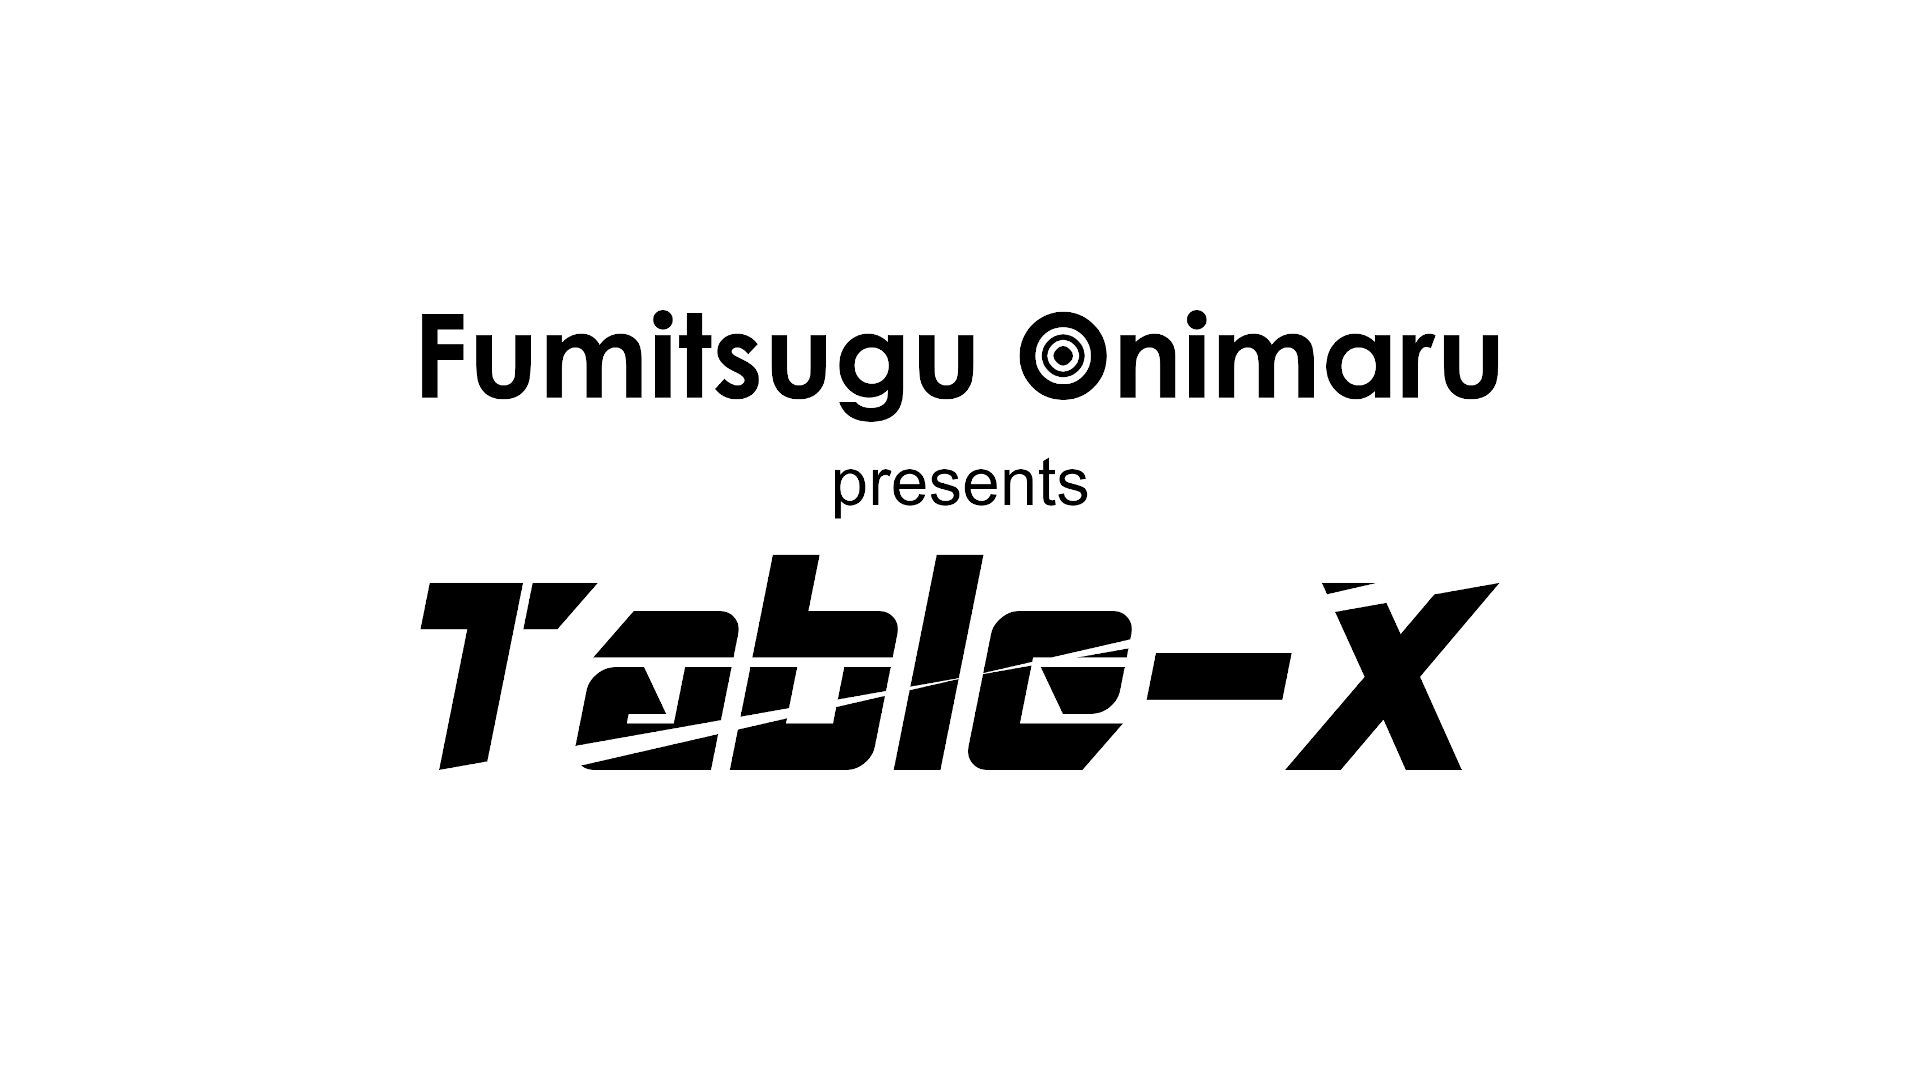 Table-X a.k.a. Fumitsugu Onimaru